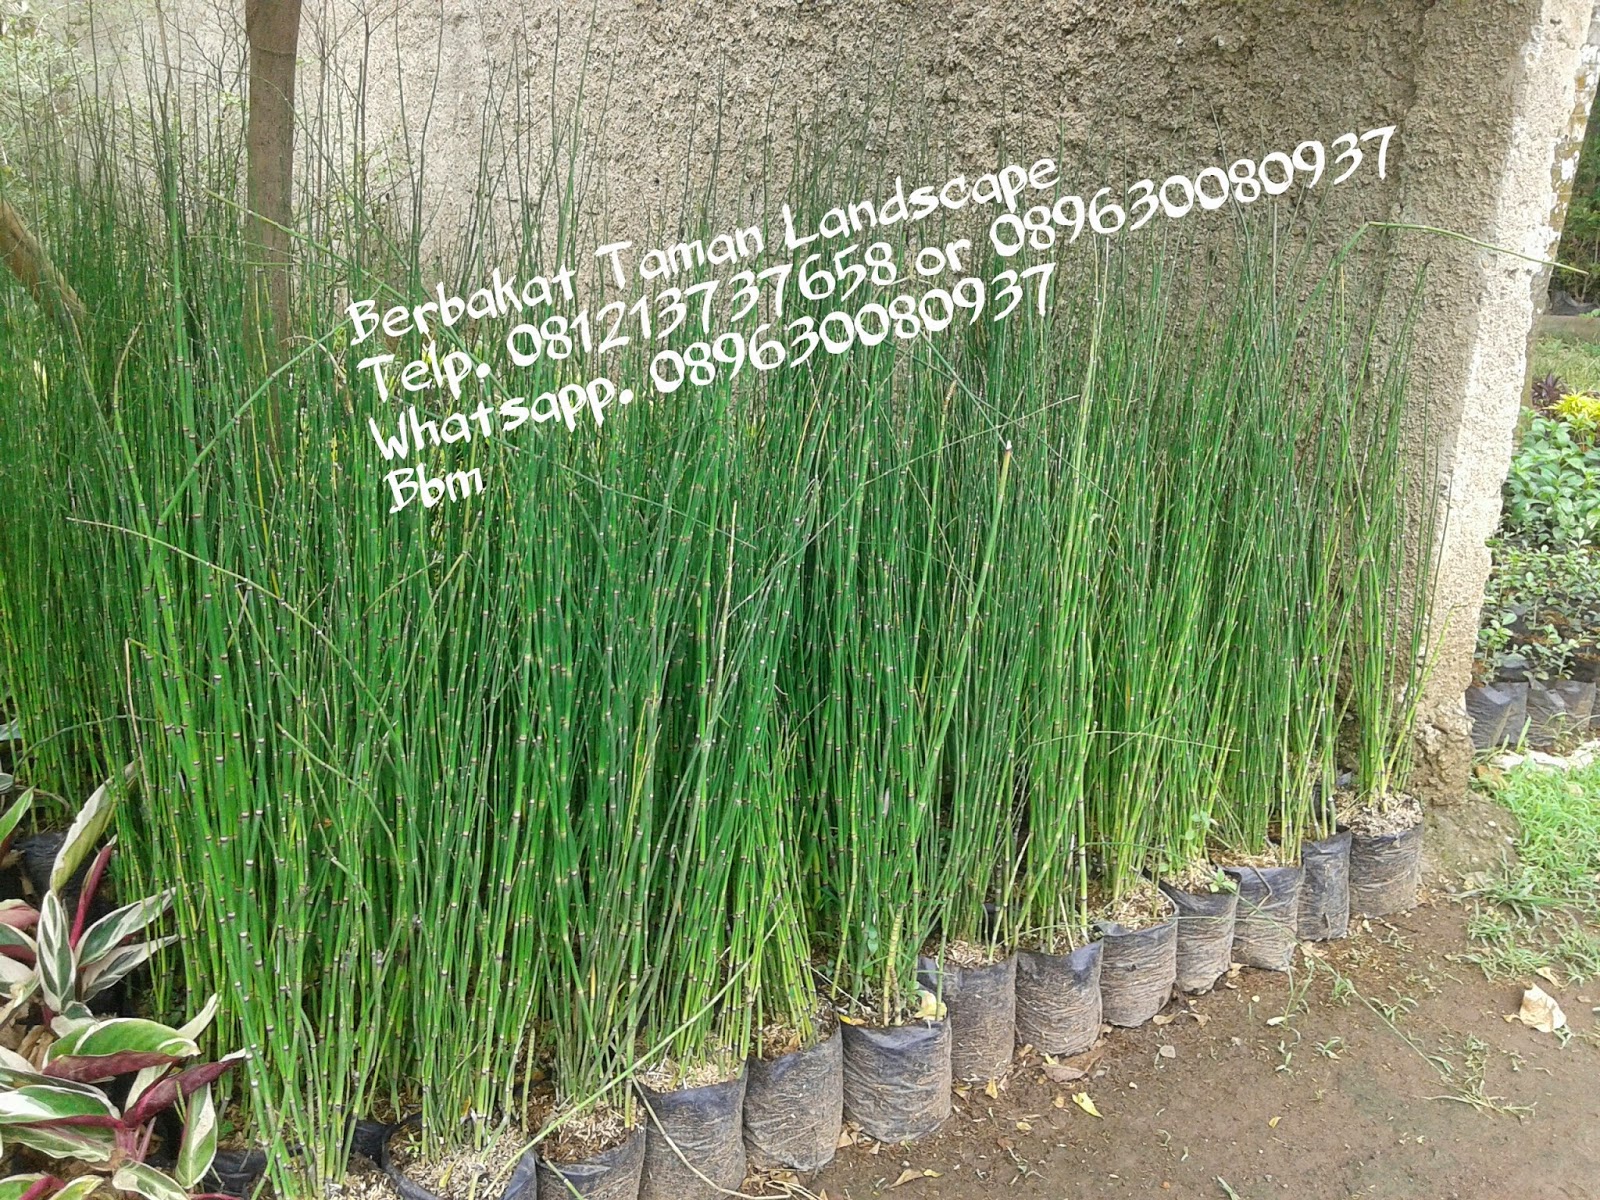  Jual  Pohon Bambu  Air  Tanaman Hias Minimalis Murah 